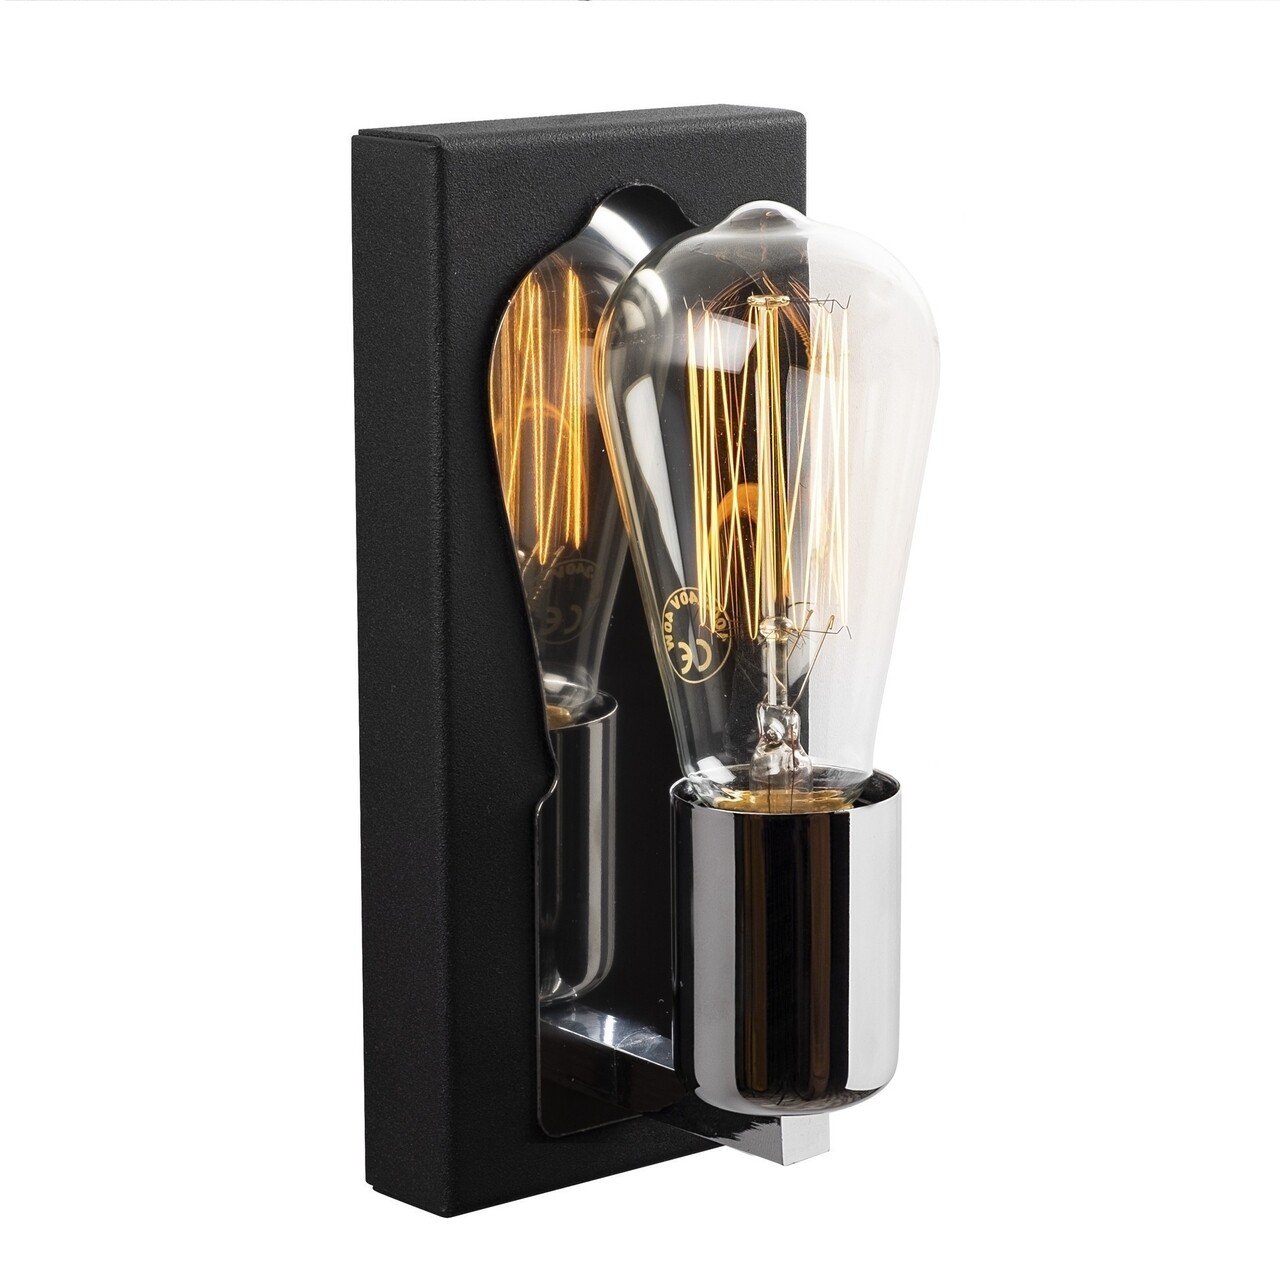 Karain N-1353 Fali lámpa, Noor, 10 x 9 x 21 cm, 1 x E27, 100W, fekete